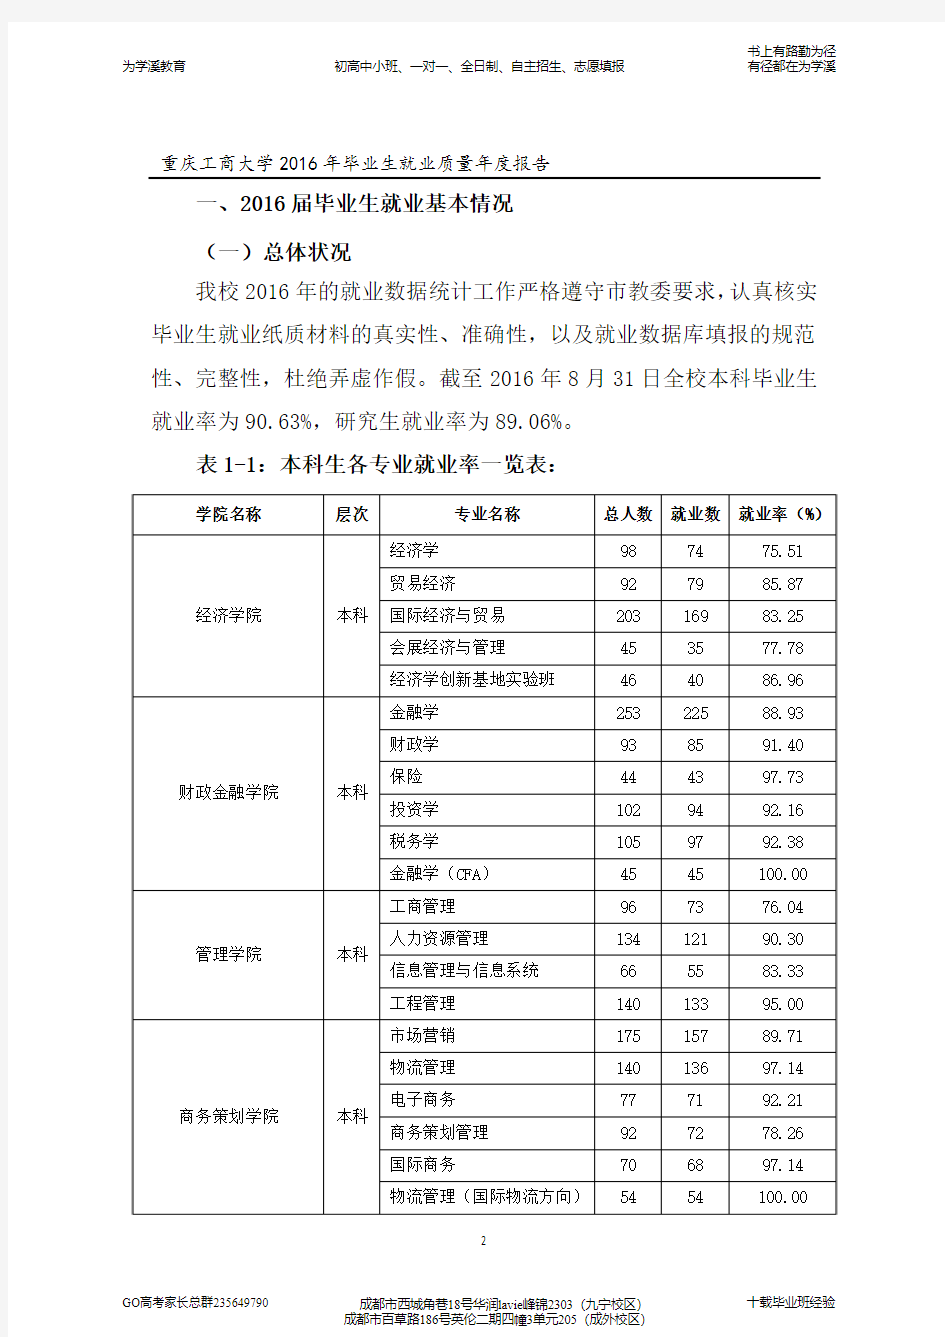 重庆工商大学2016年毕业生就业质量年度报告